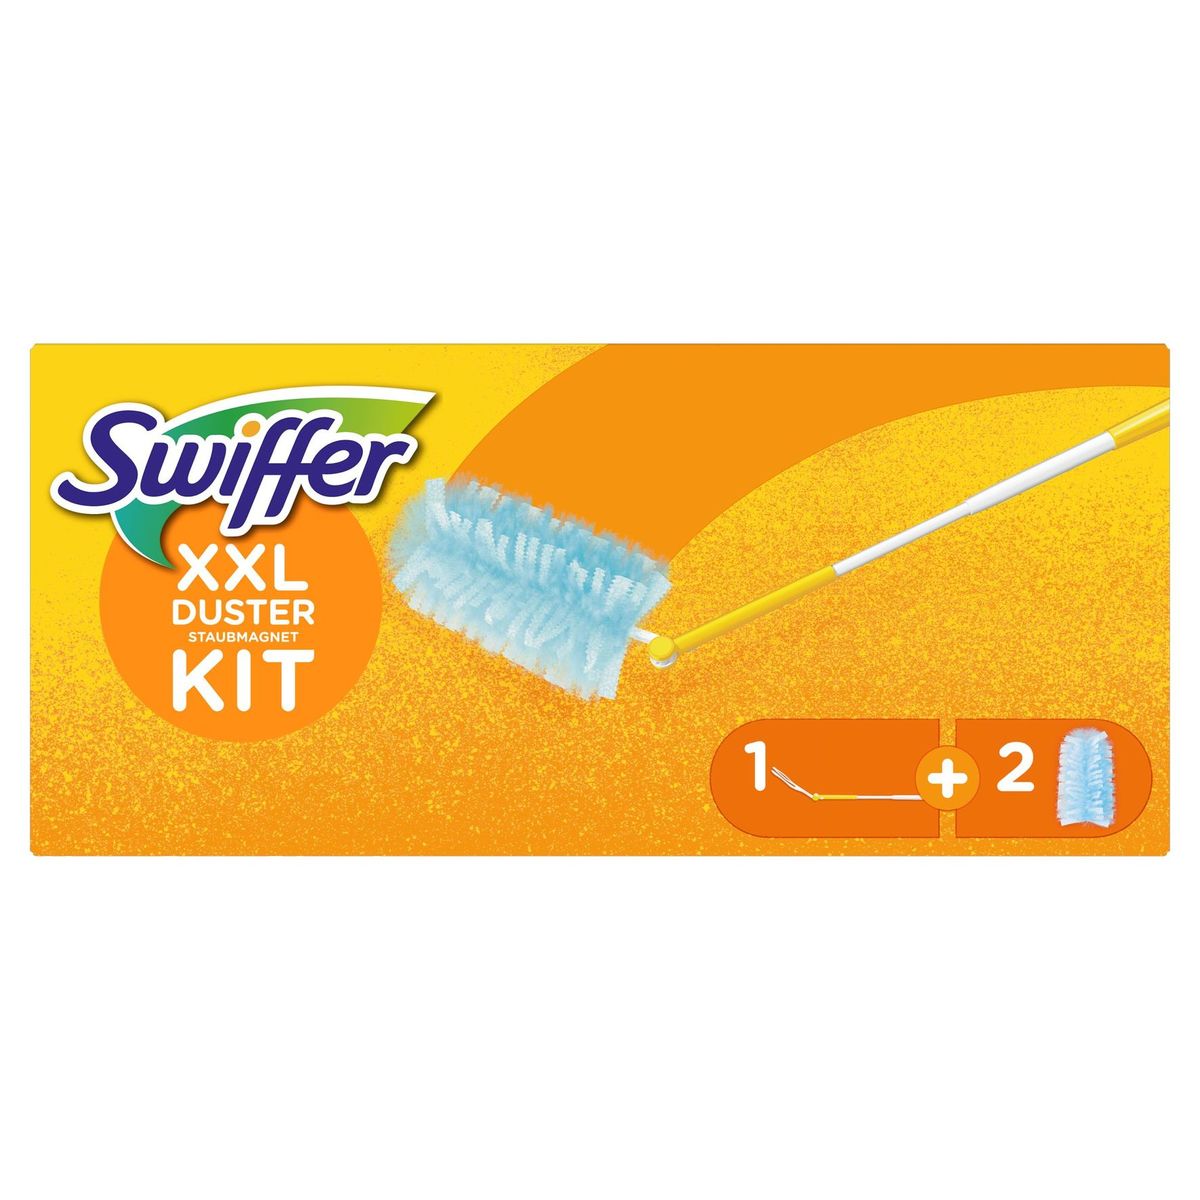 Swiffer Duster XXL Trap & Lock-kit Voor Vloer